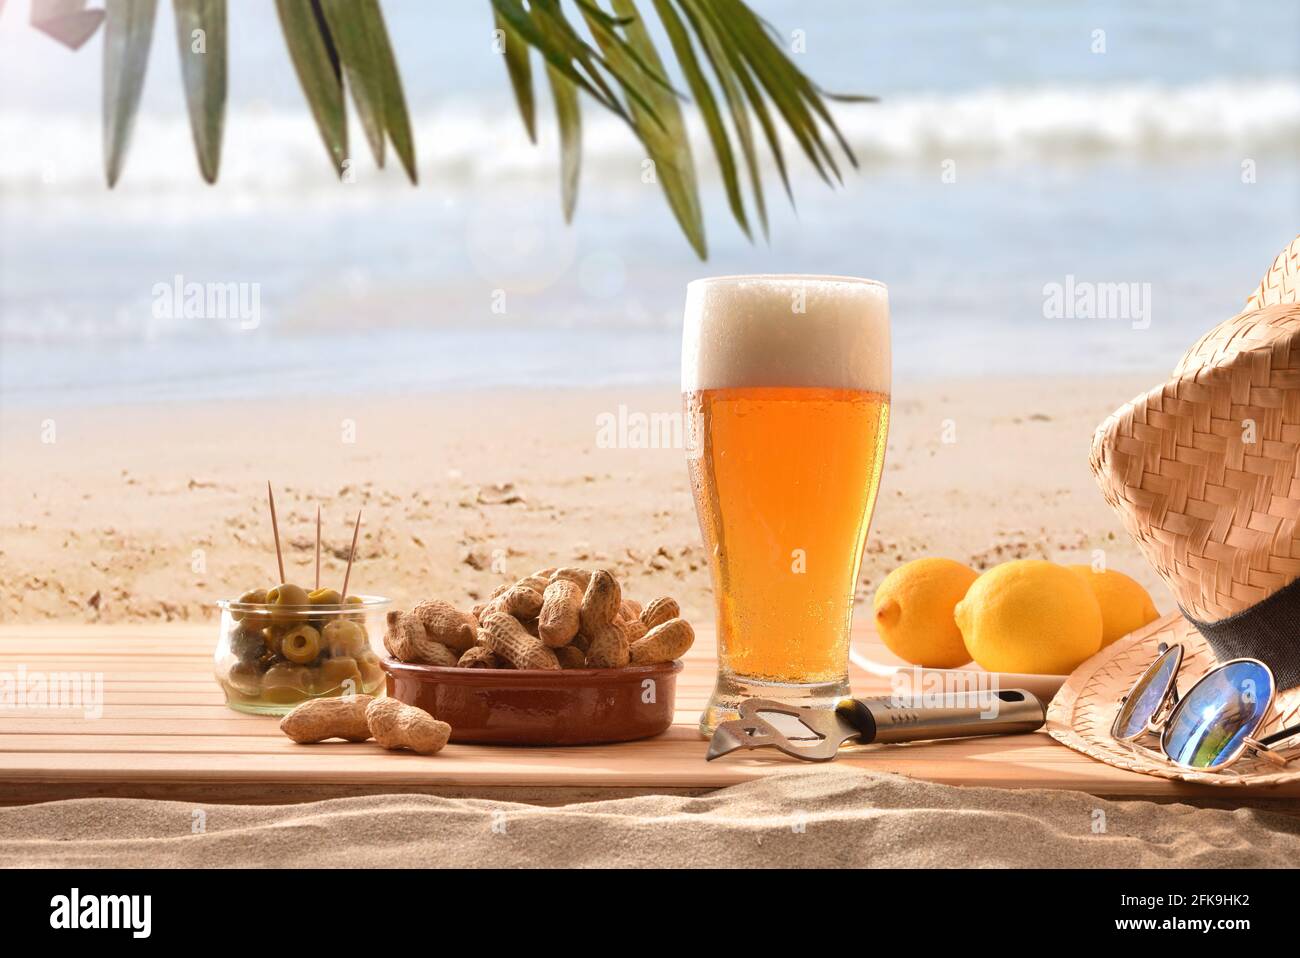 Dettaglio di un bicchiere di birra fresca su legno nel sabbia con un succulento spuntino su una spiaggia con albero di palma in una giornata calda Foto Stock